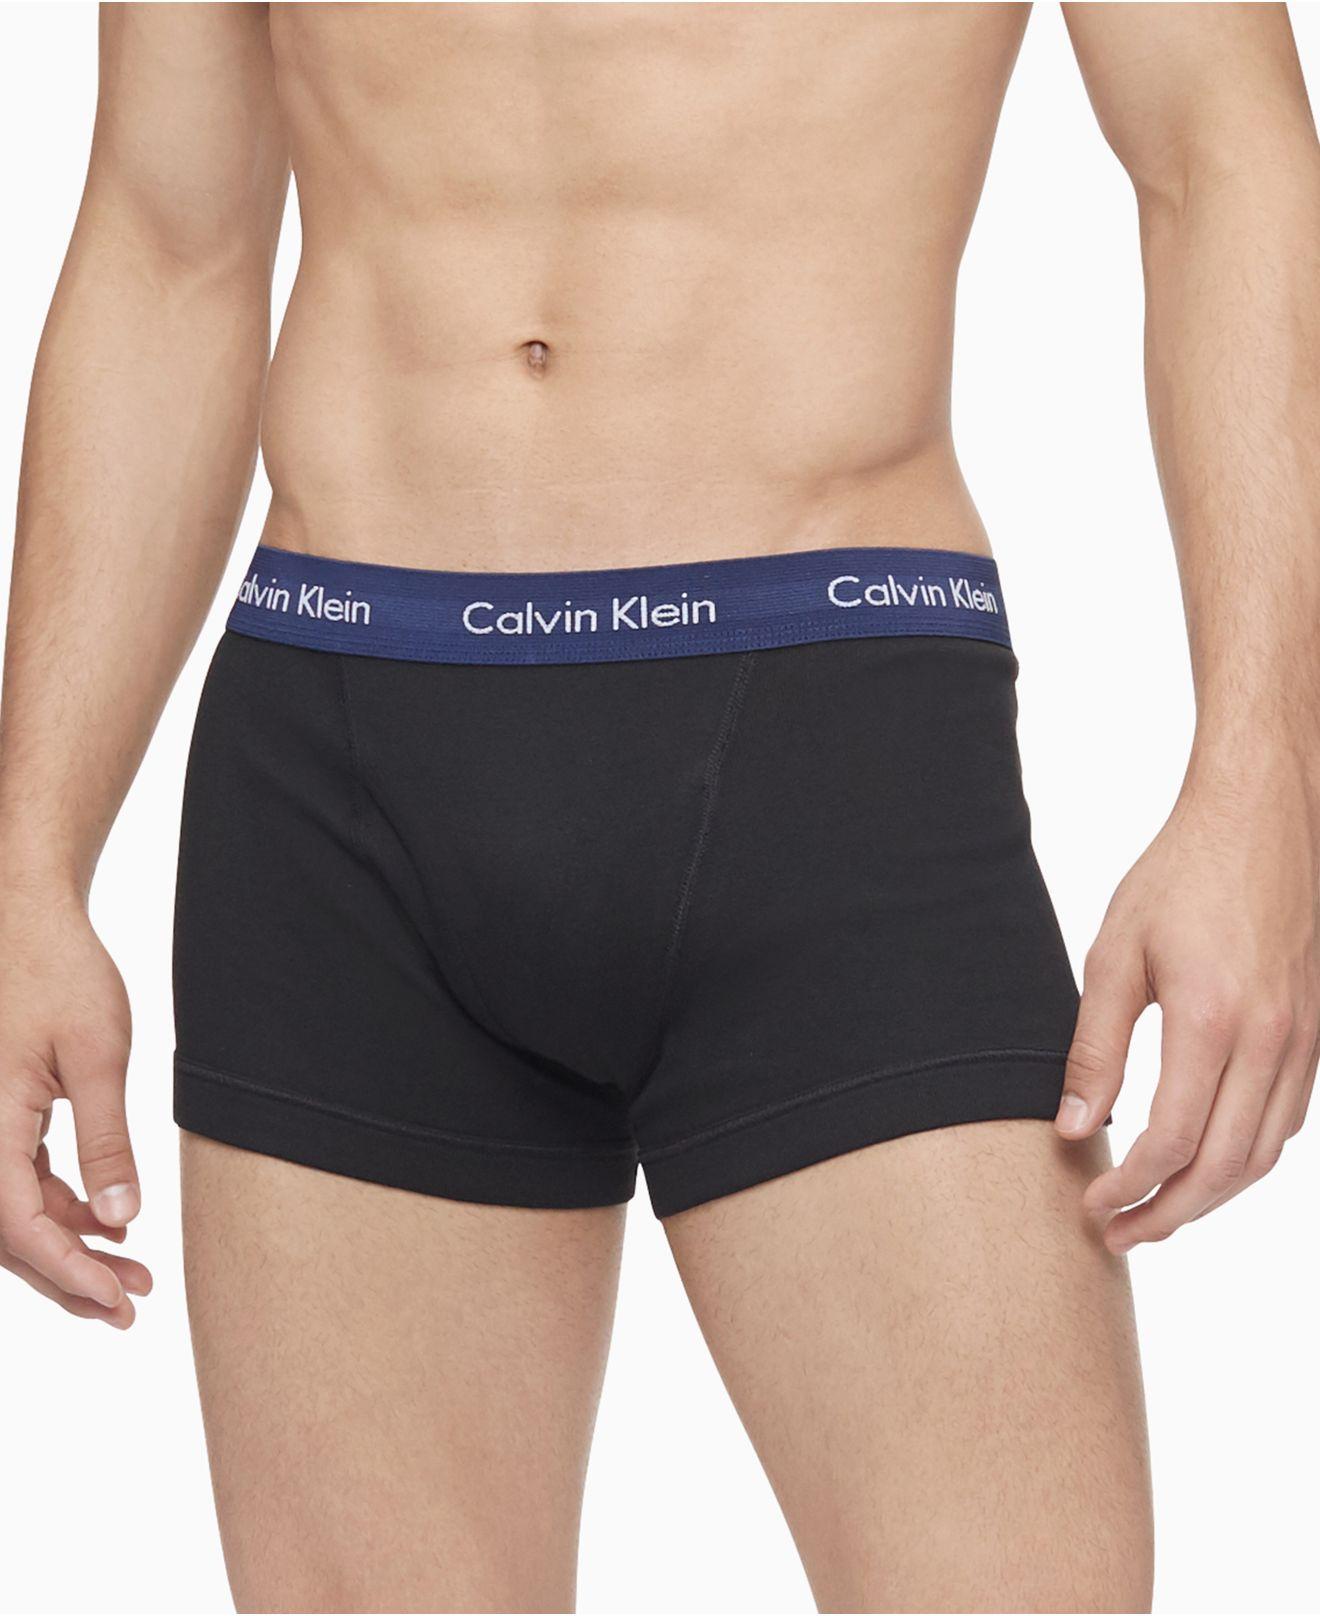 Calvin Klein 5-pk. Cotton Classic Trunks in Black for Men - Lyst